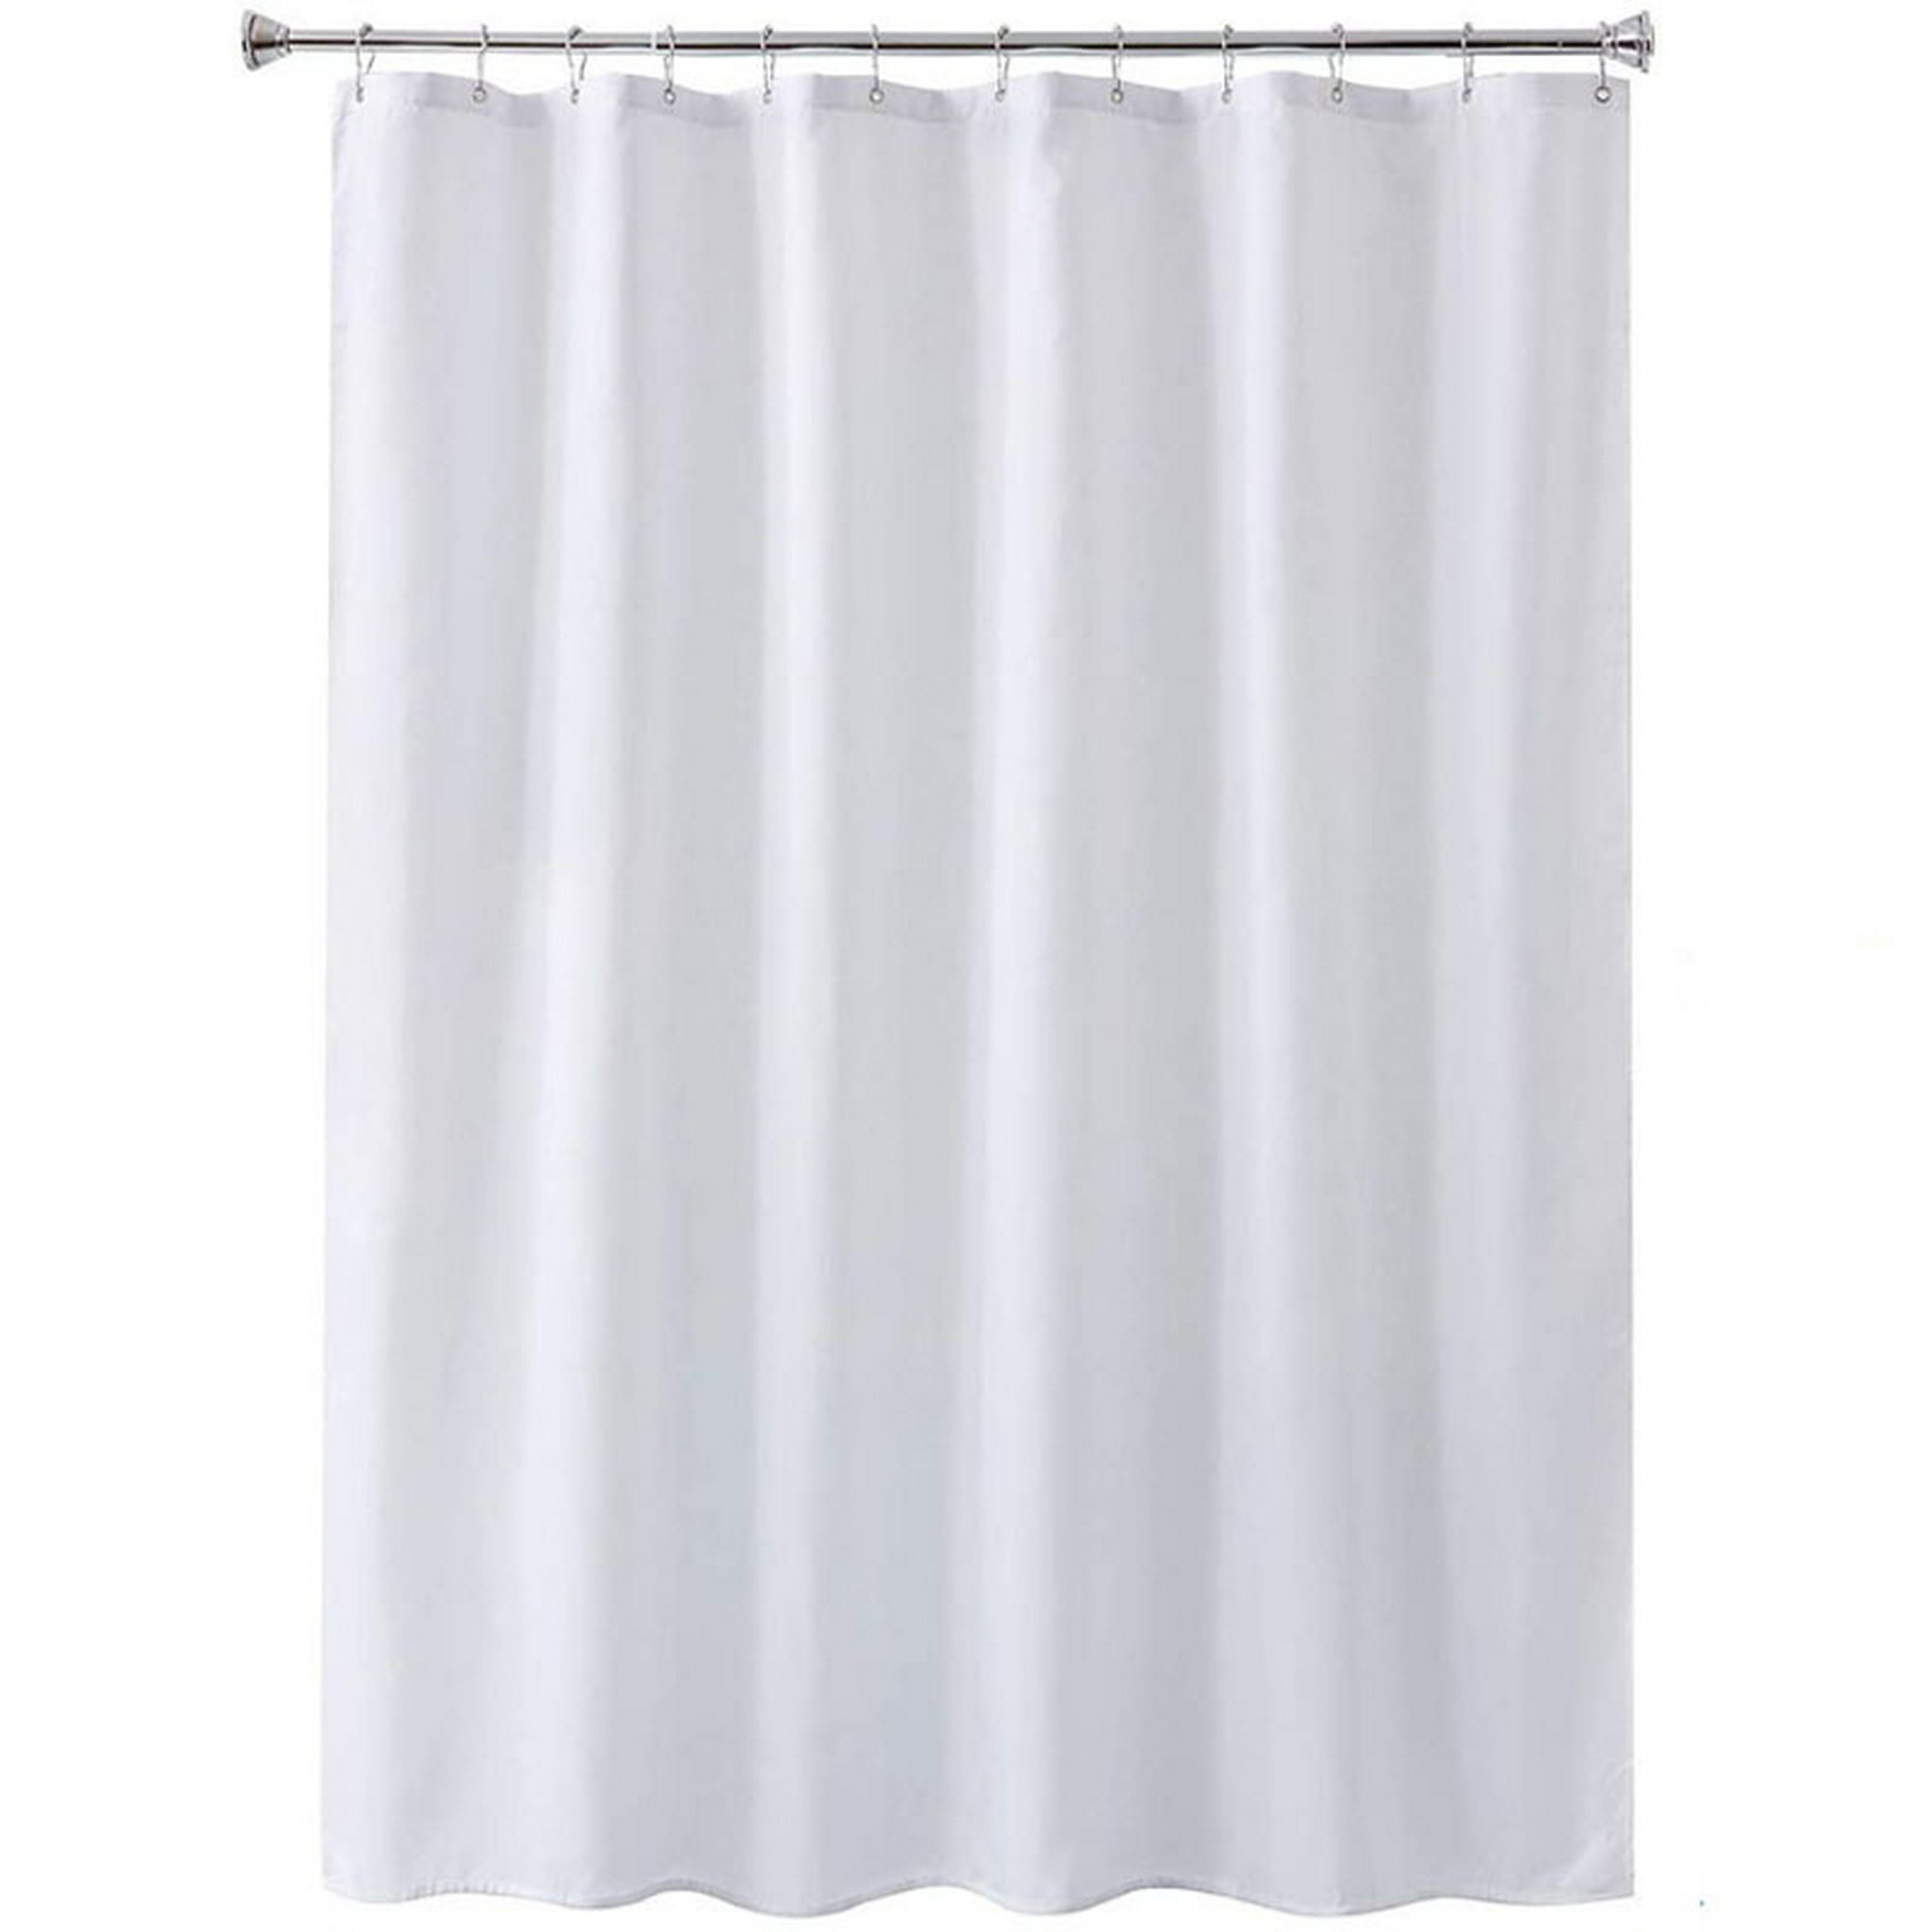 Cortina de ducha antimoho 200x200 largo para bañera, tela de ducha blanca  de largo extra, ancho 200 x alto 200 cm LingWen 9024719134161